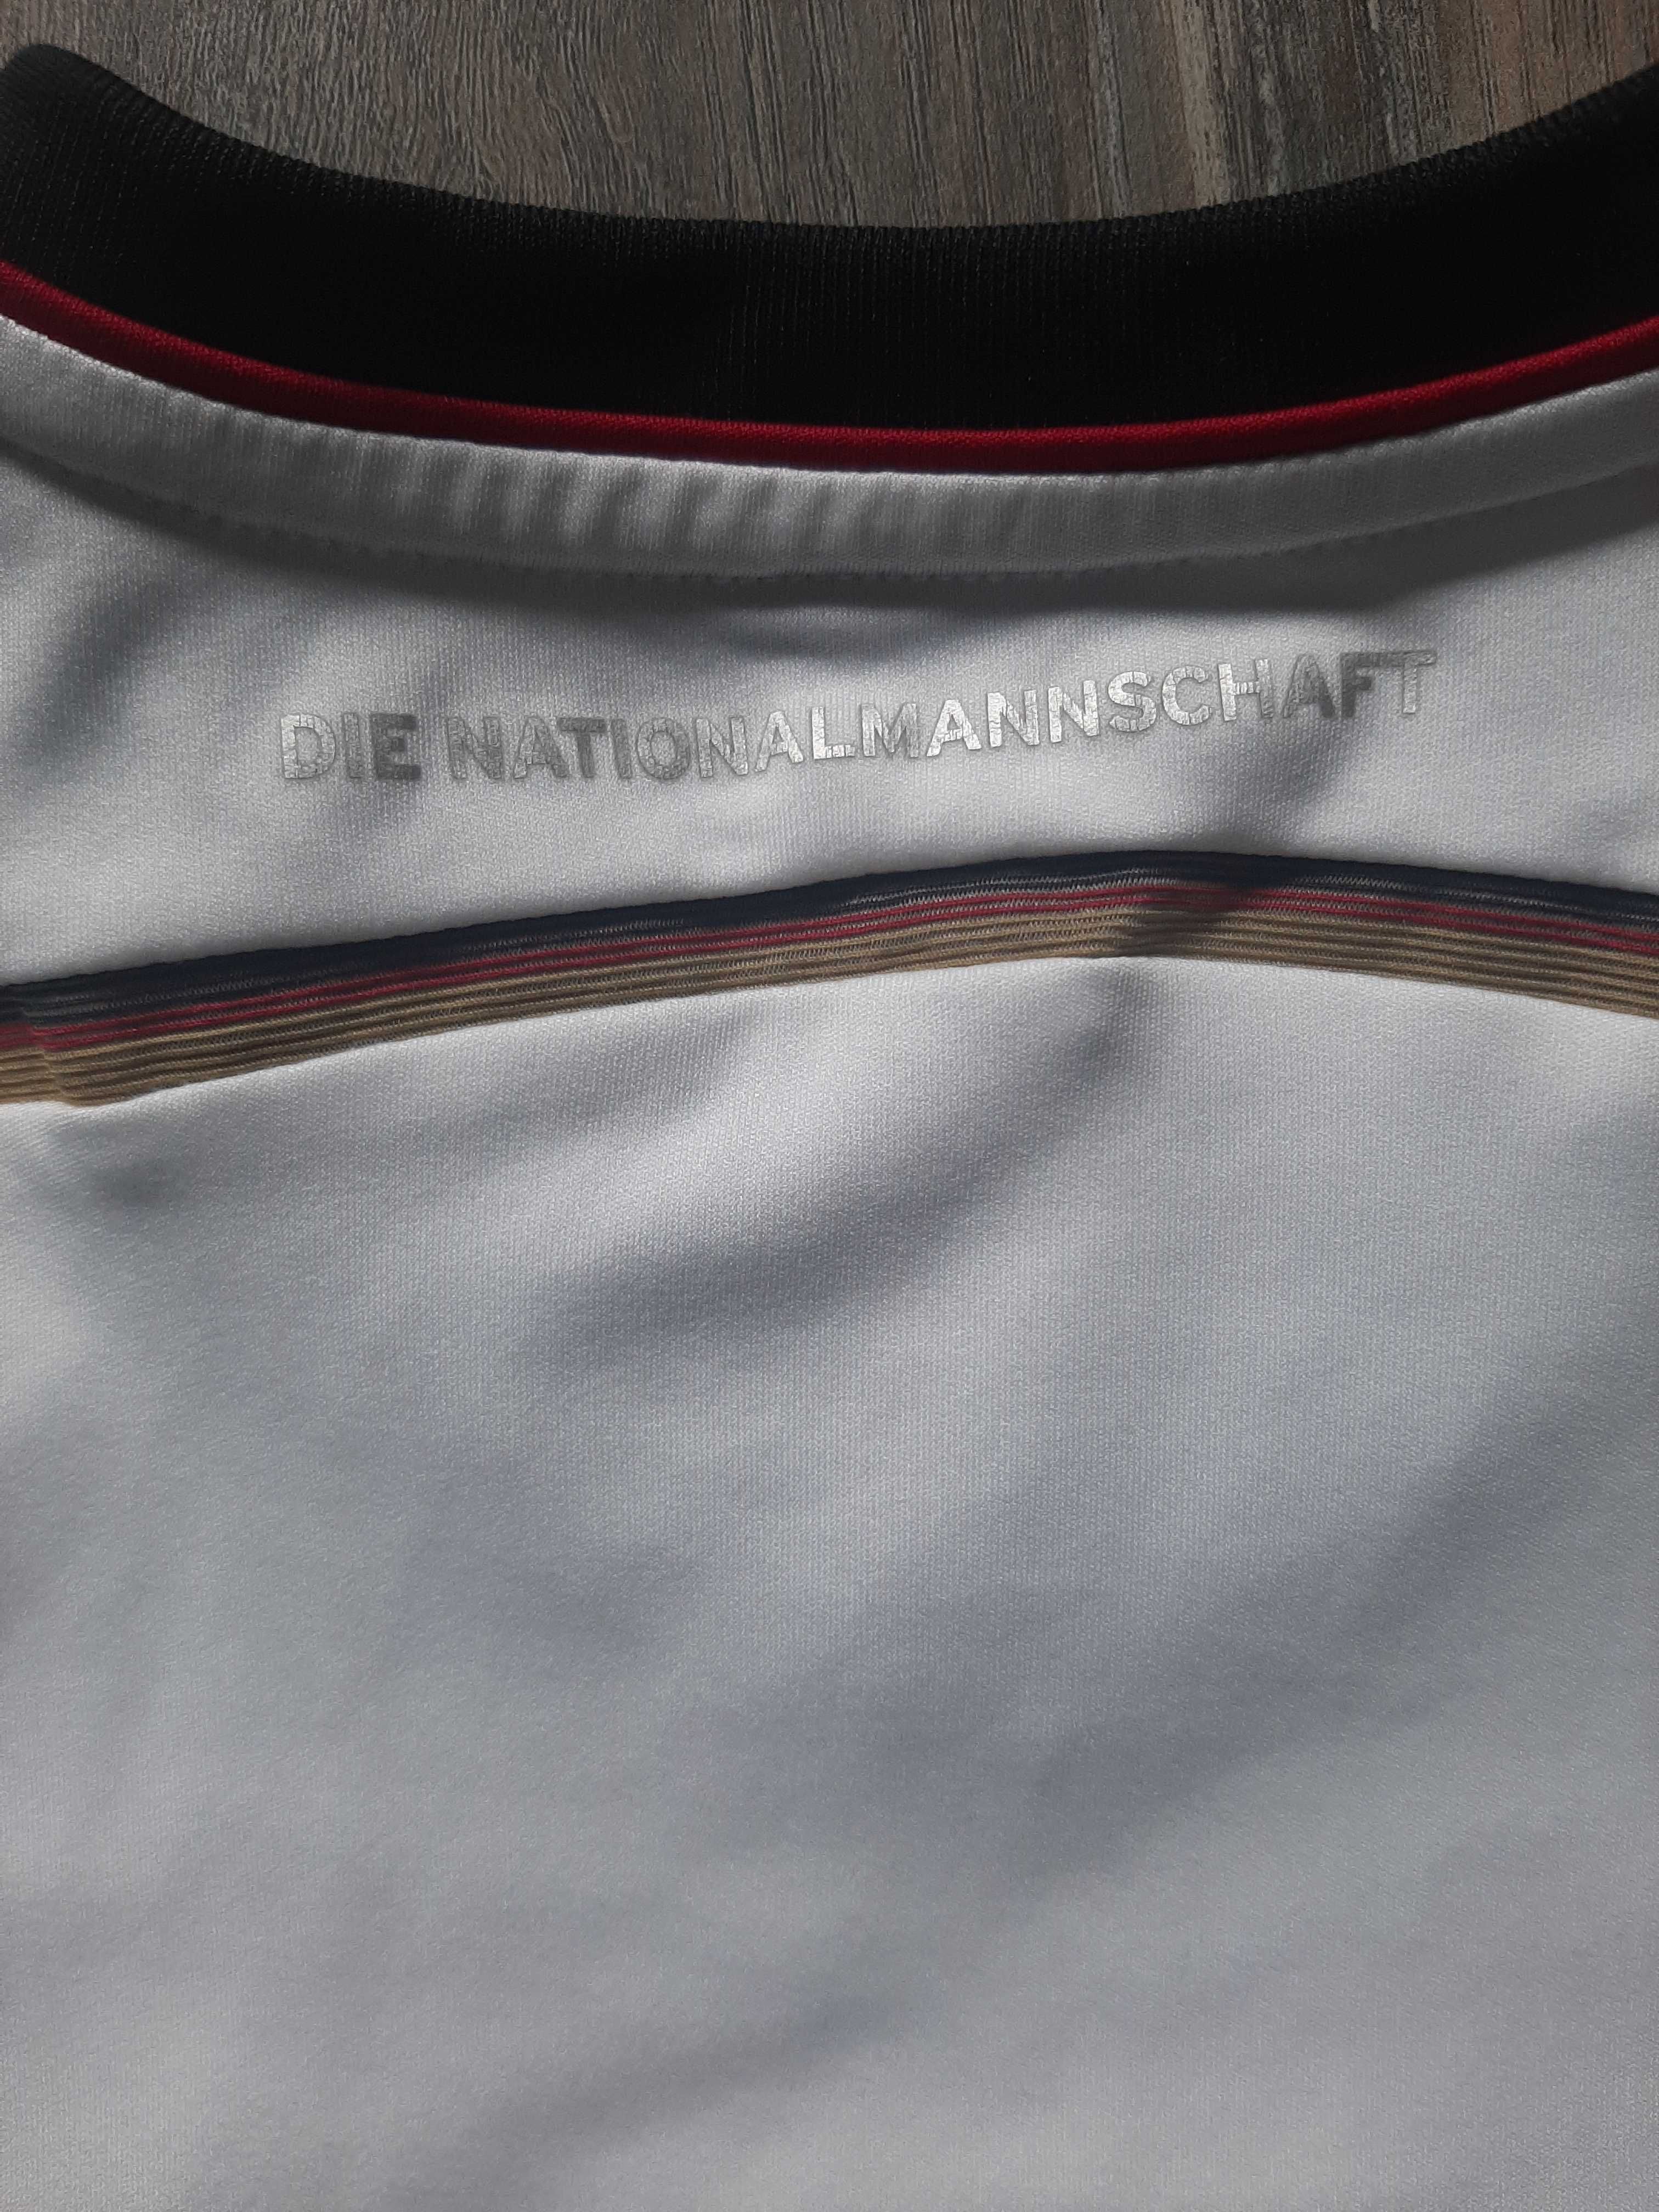 Koszulka piłkarska sportowa reprezentacji Niemiec adidas